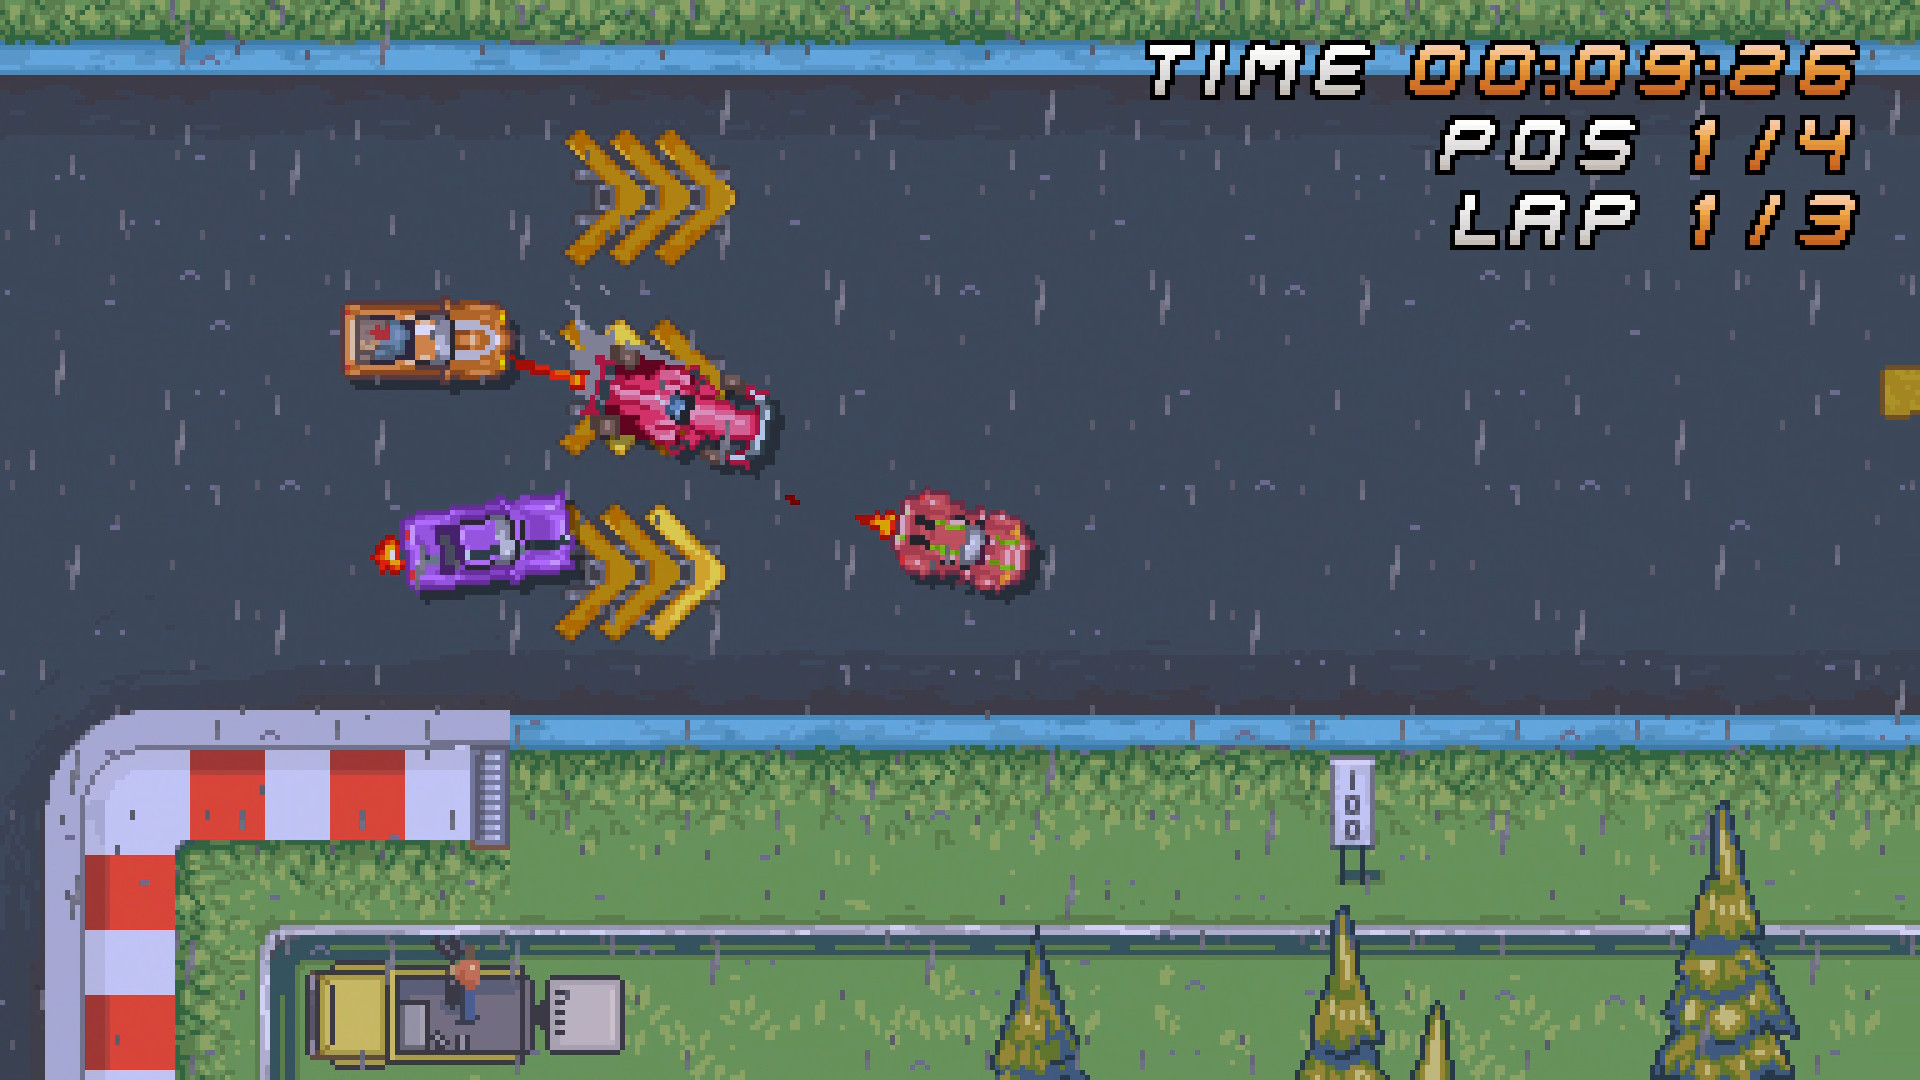 Super Arcade Racing na App Store